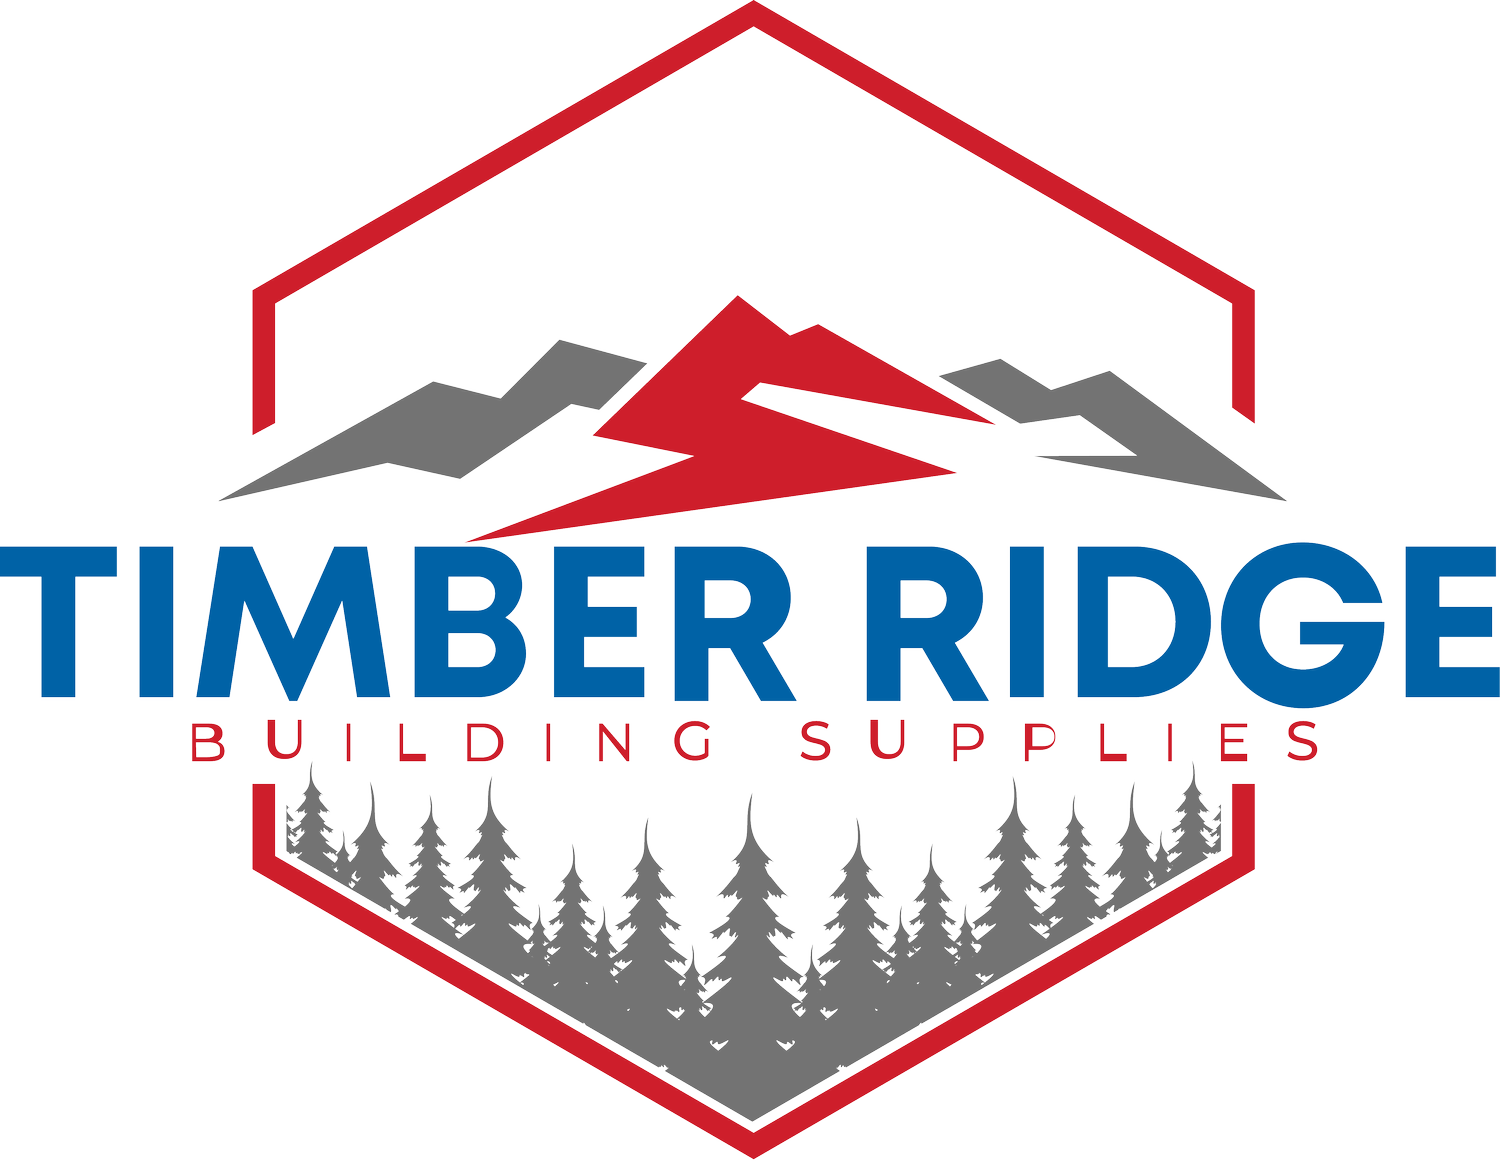 Timber Ridge Building Supplies